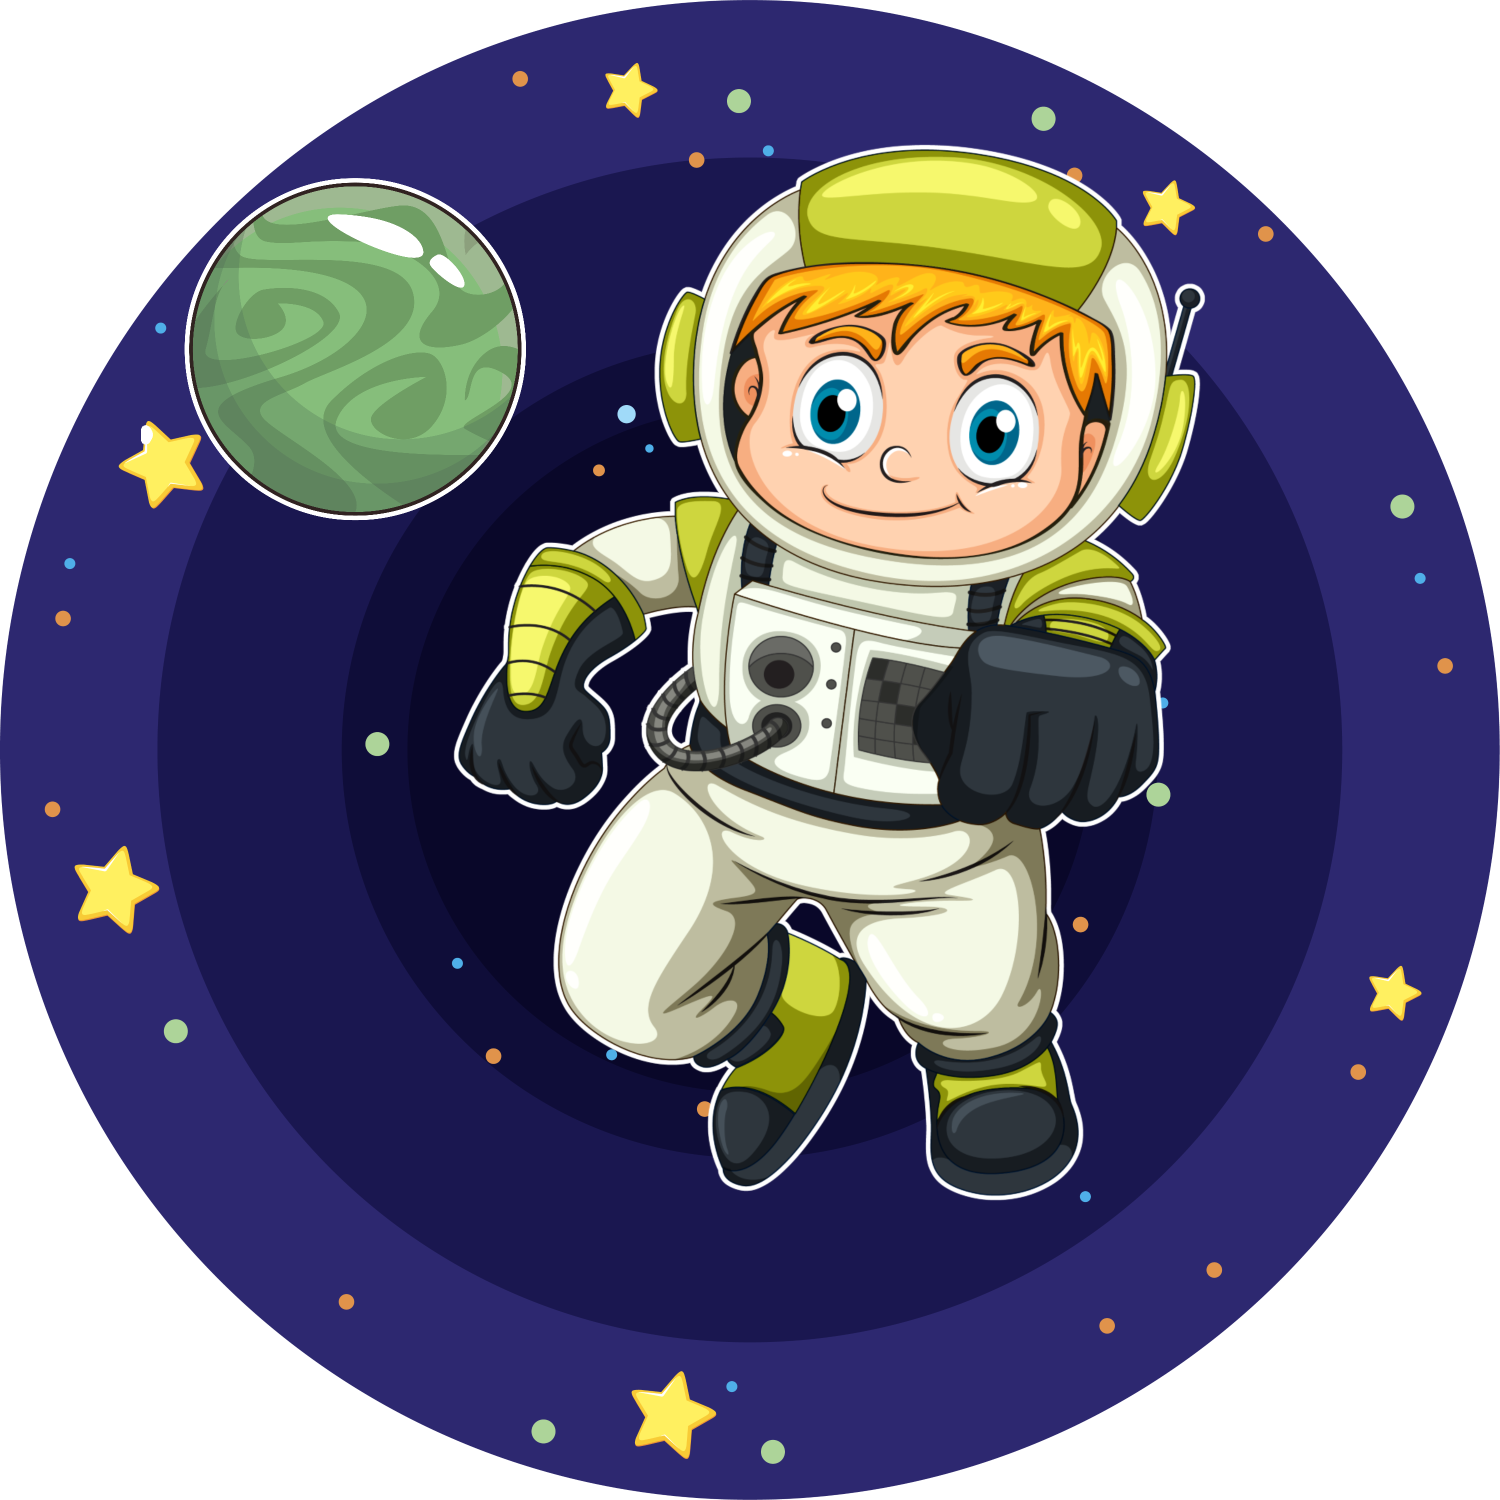 Космонавт картинки для детей дошкольного возраста. Космонавт мультяшный. Космонавтика для детей. Космонавт для детей. Мультяшные космонавты.